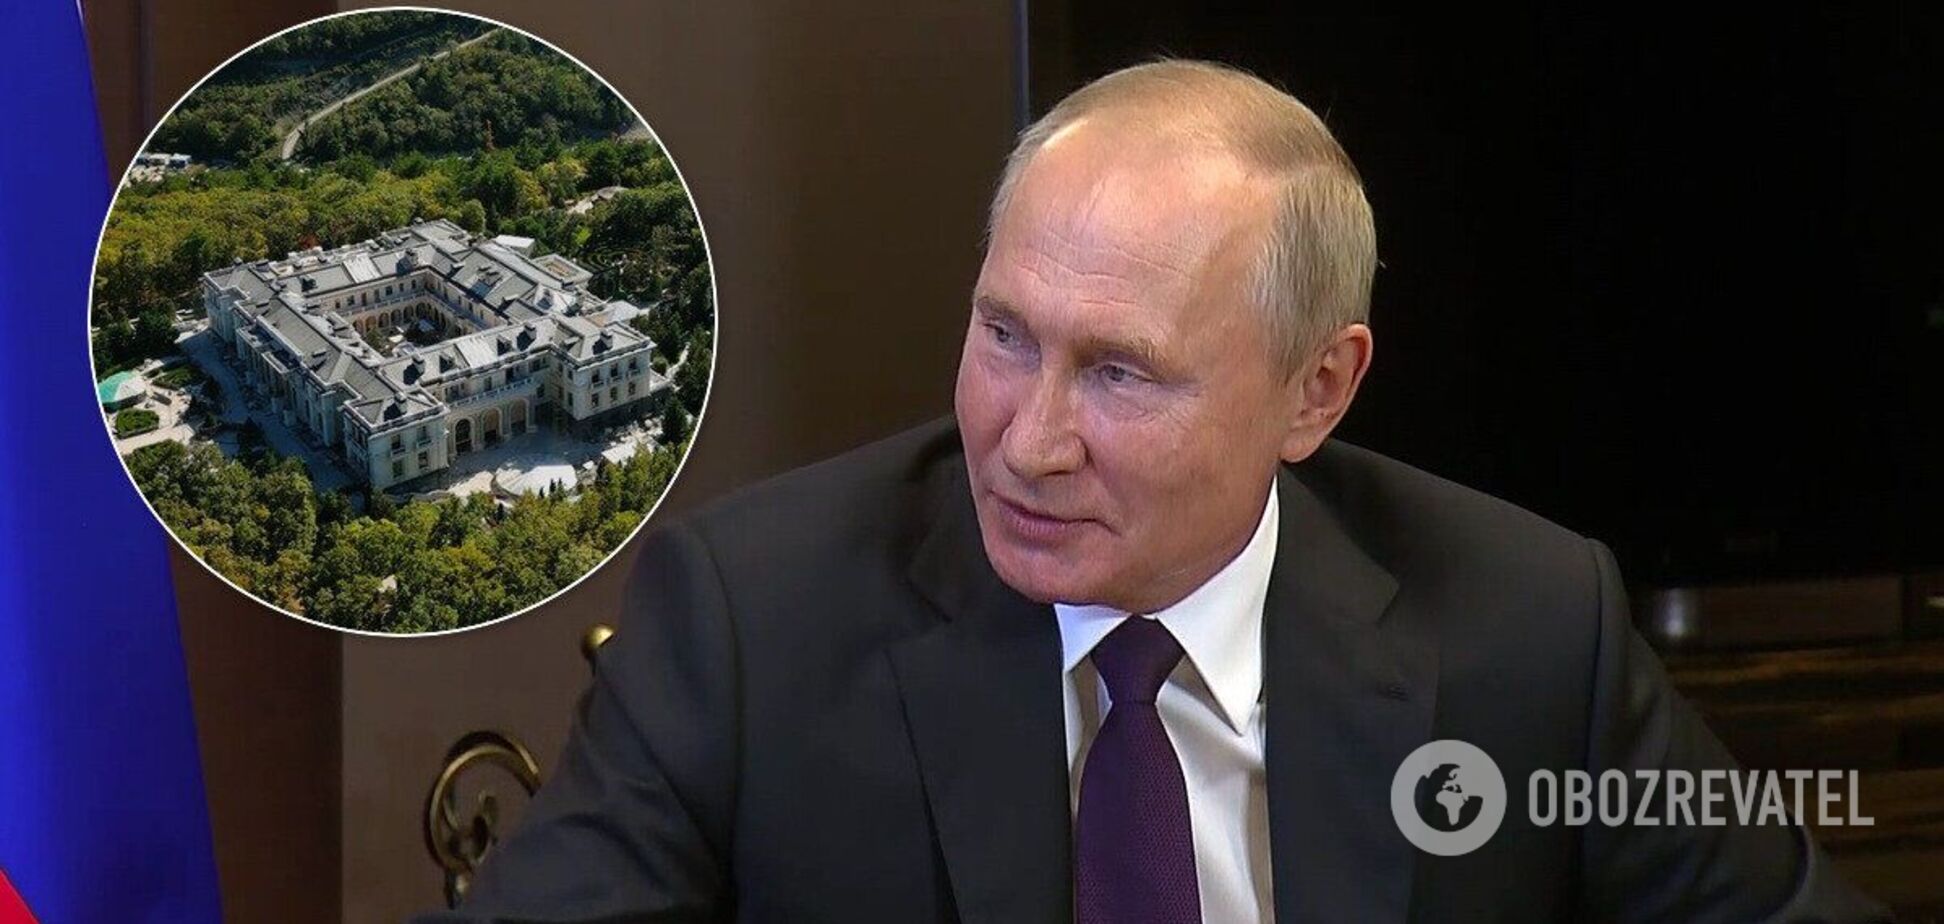 'Дворец для Путина' набрал более 100 млн просмотров и стал популярным среди украинцев